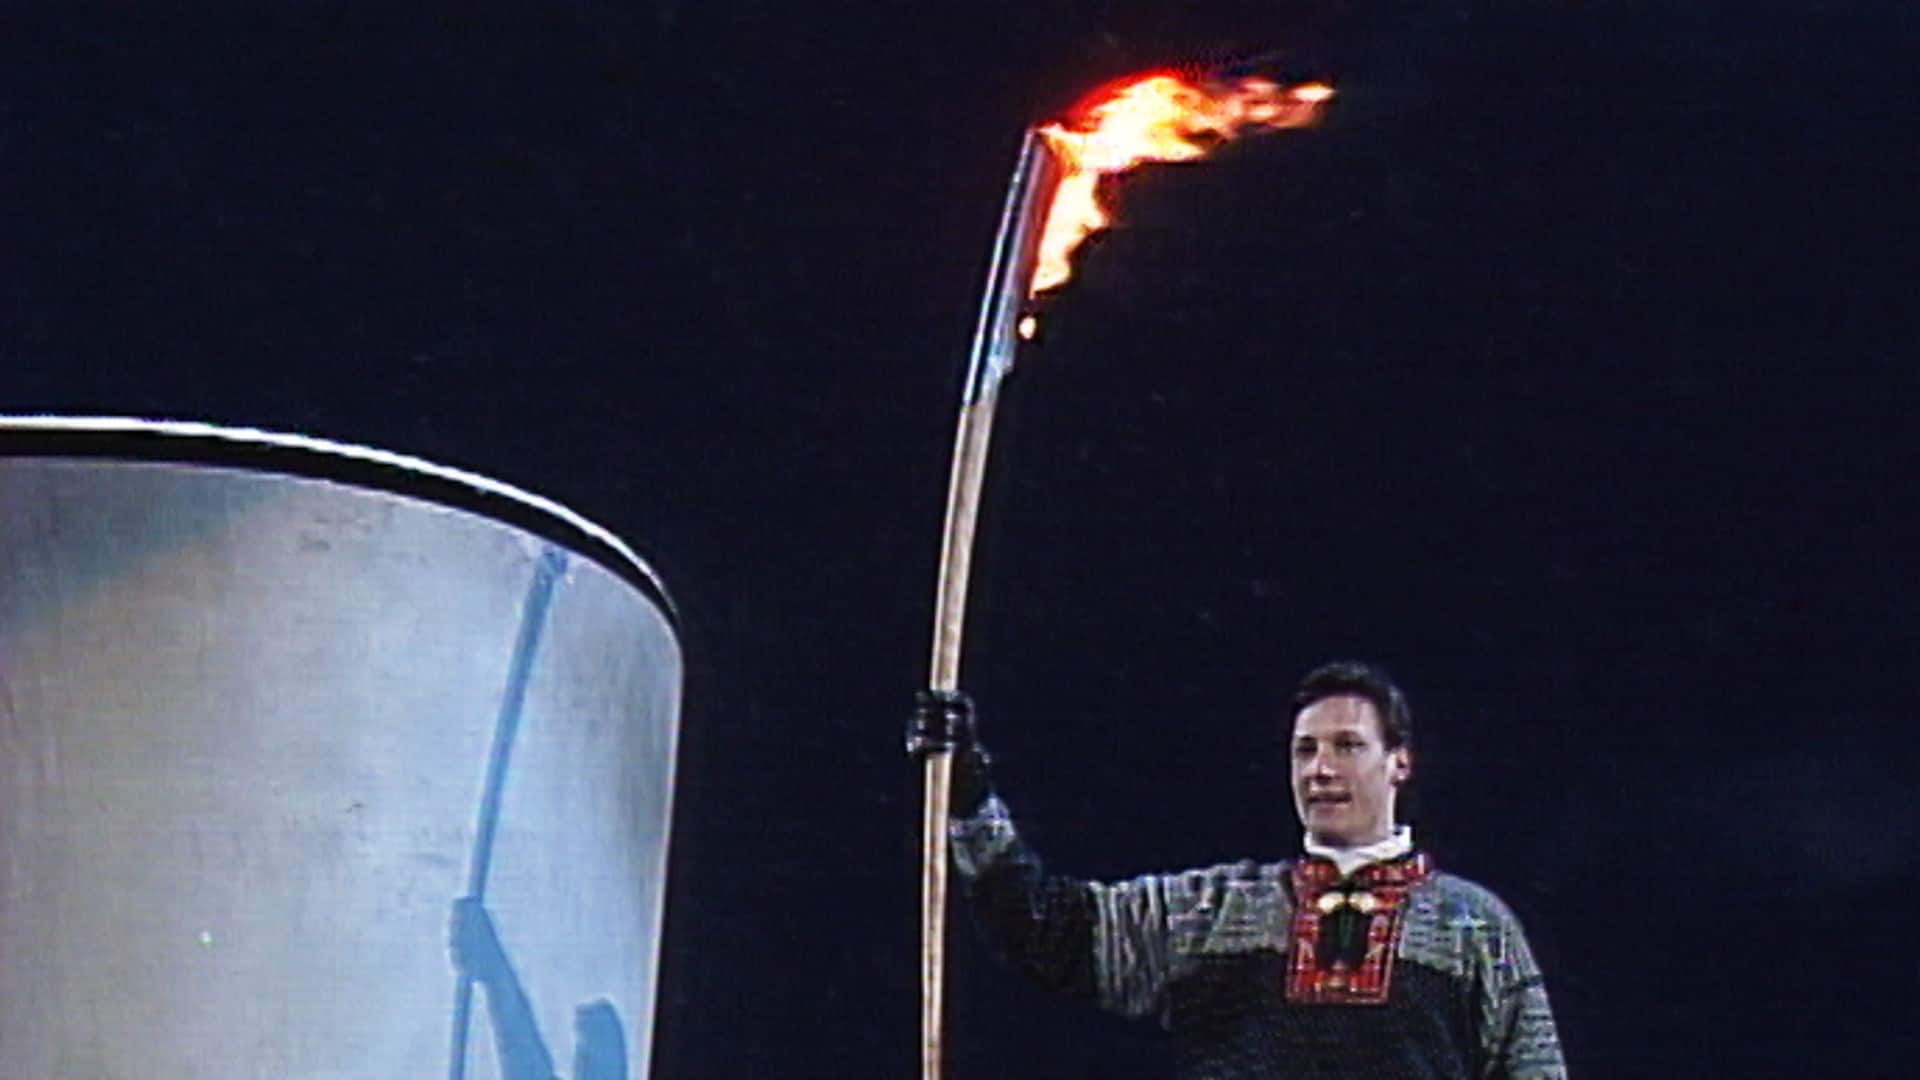 OL på Lillehammer - De XVII olympiske vinterleker - Lillehammer 1994. Åpningsseremoni - NRK TV